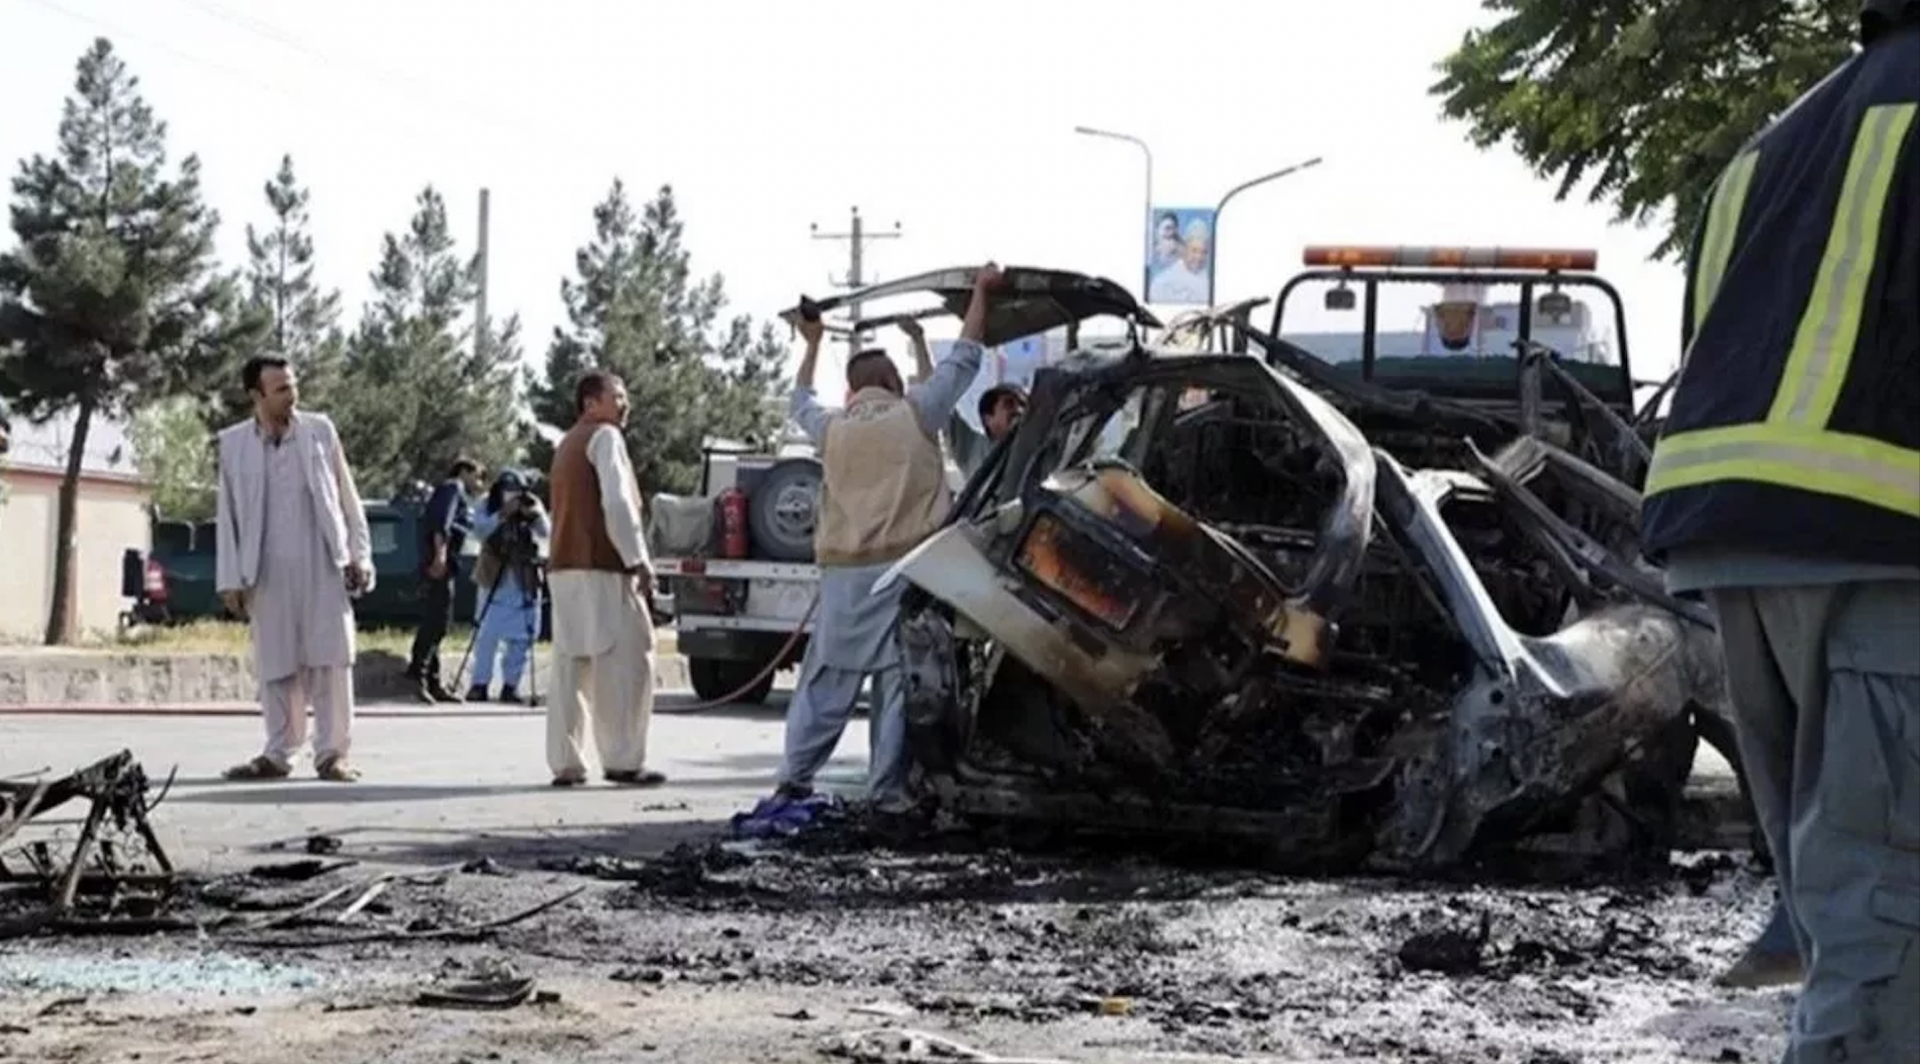 انفجار در شهر مزارشریف افغانستان